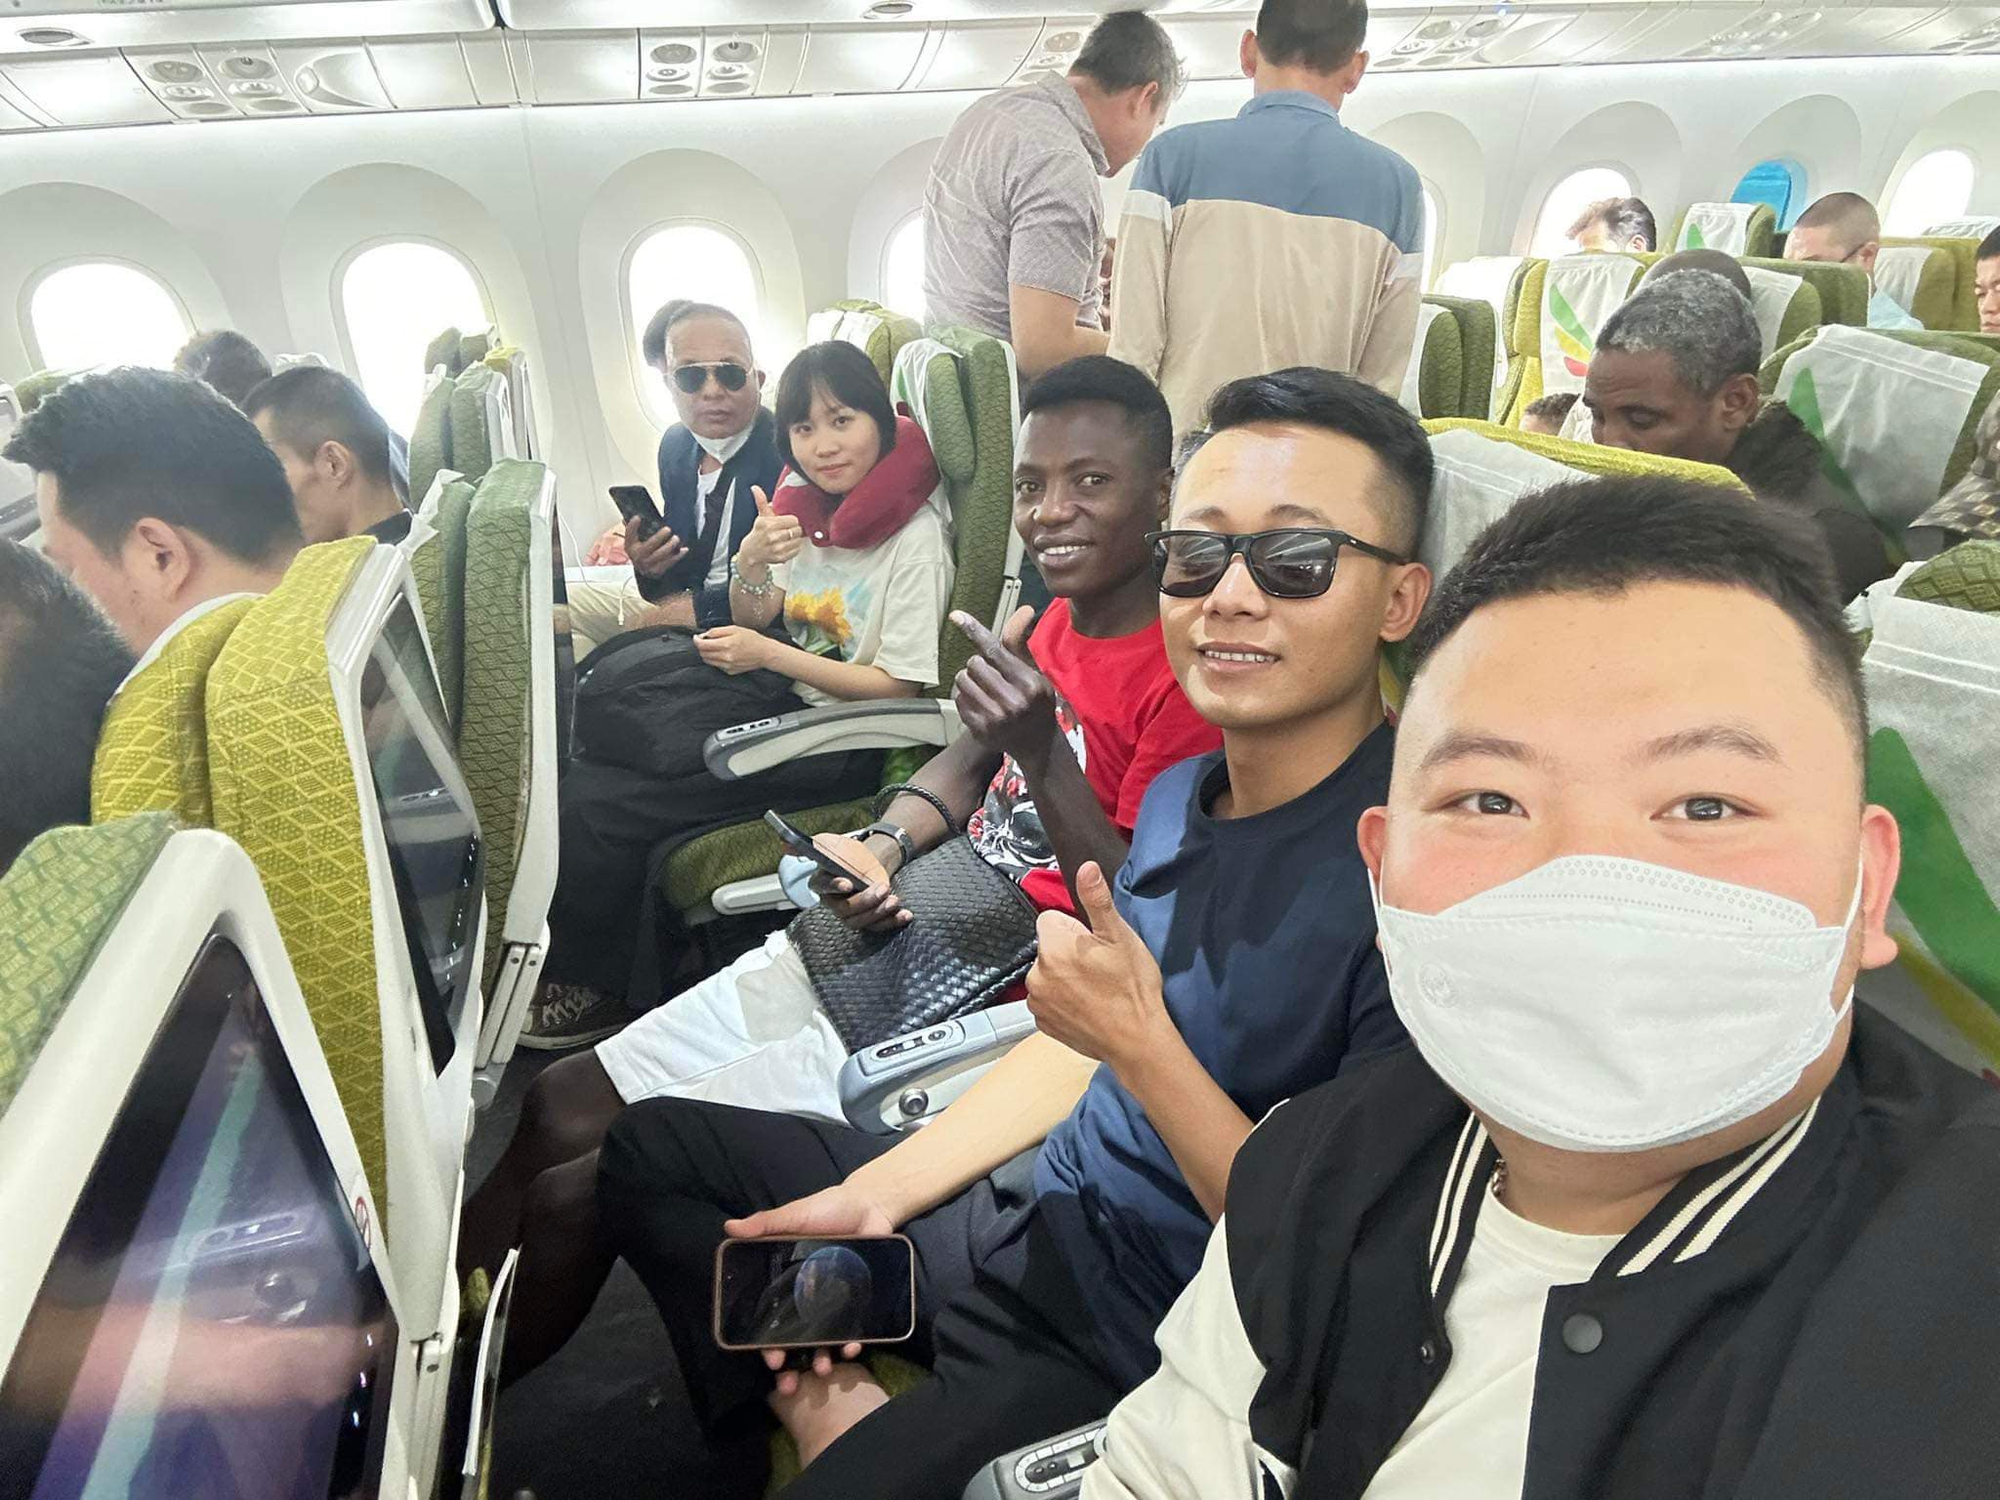 Quang Linh Vlogs gặp sự cố trên đường bay về Việt Nam, buồn vì lỡ hẹn đặc biệt - Ảnh 4.